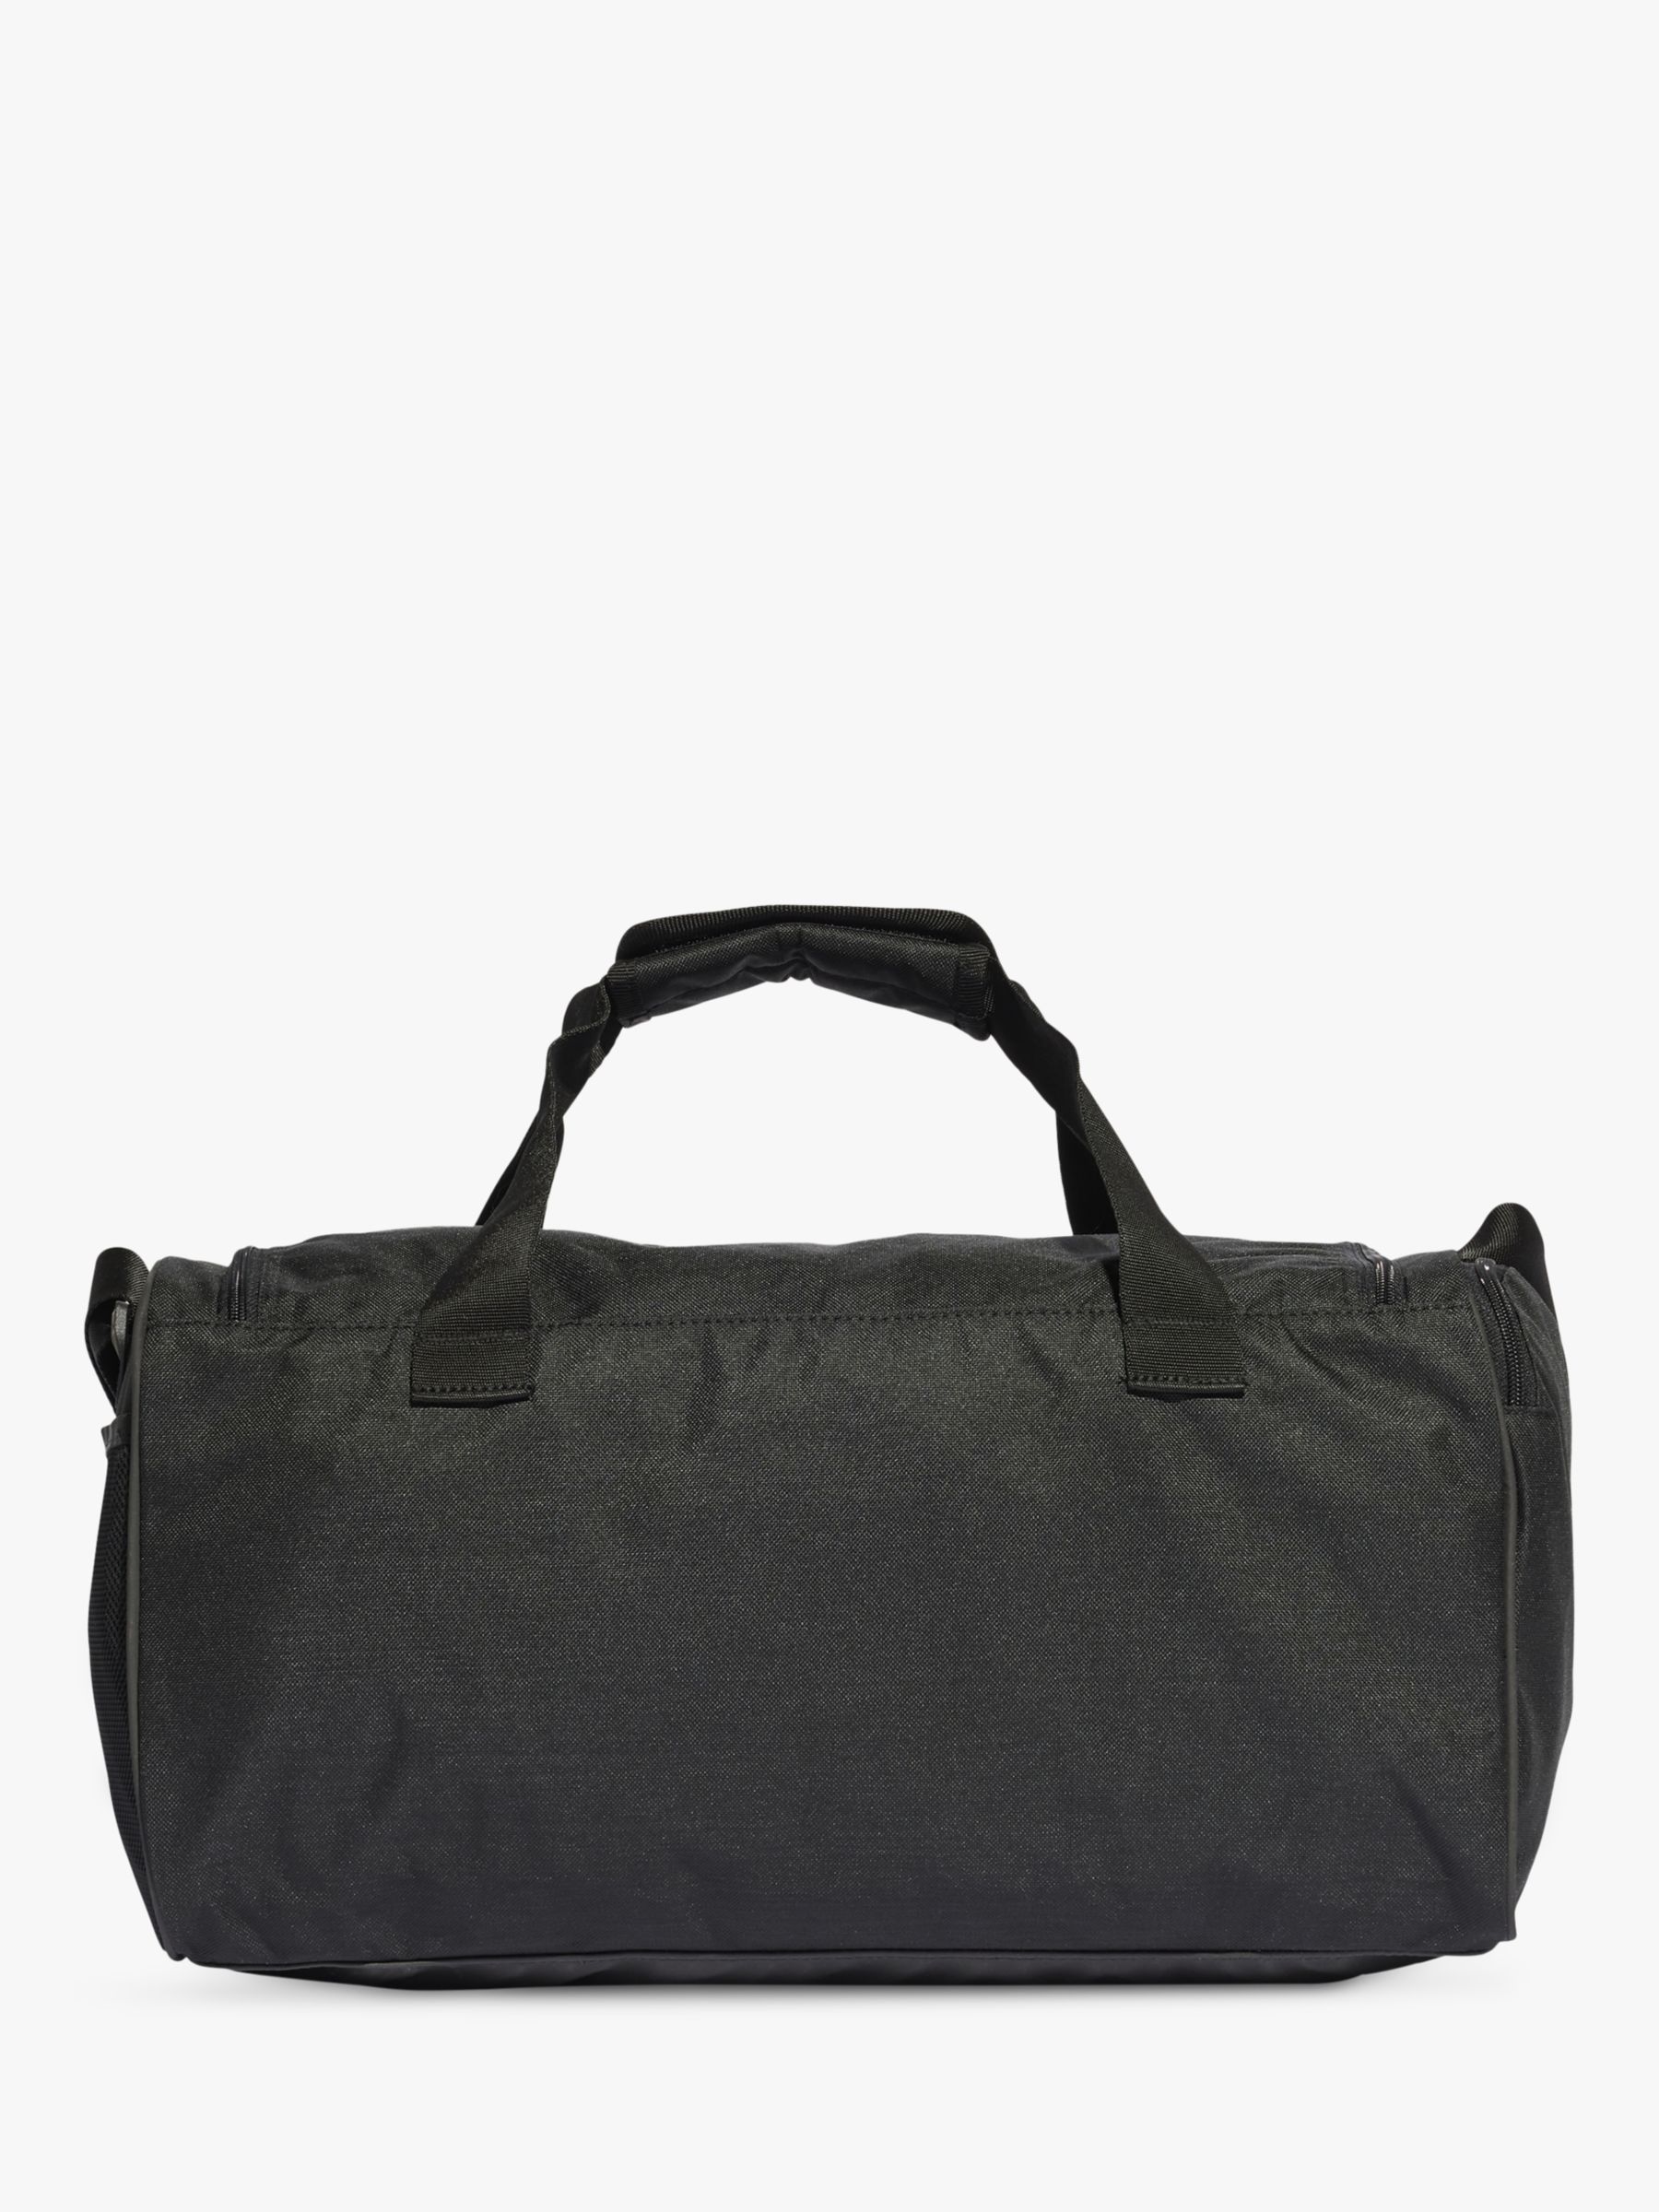 Shop Duffle Bag Nike online